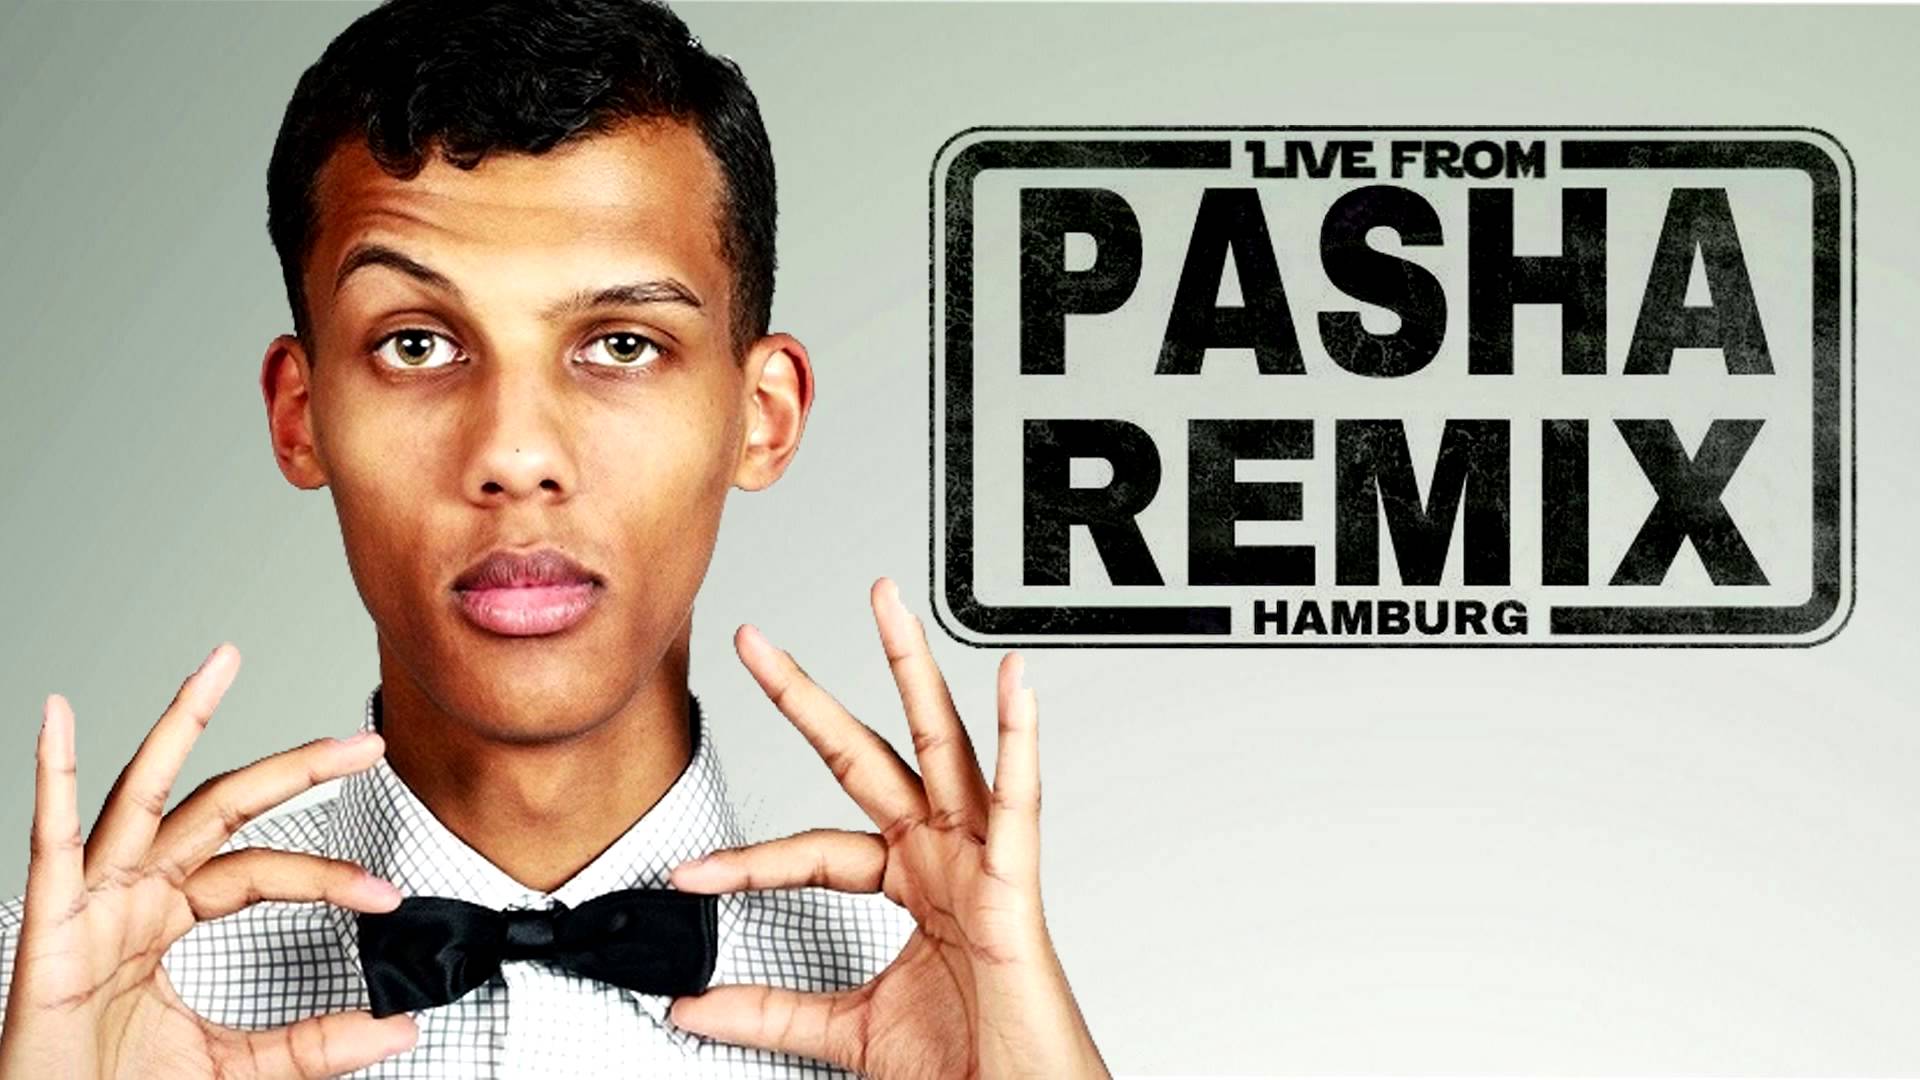 Stromae, Tous Les Memes 2014 (Pasha Remix Hamburg), YouTube. youtube.com. h...